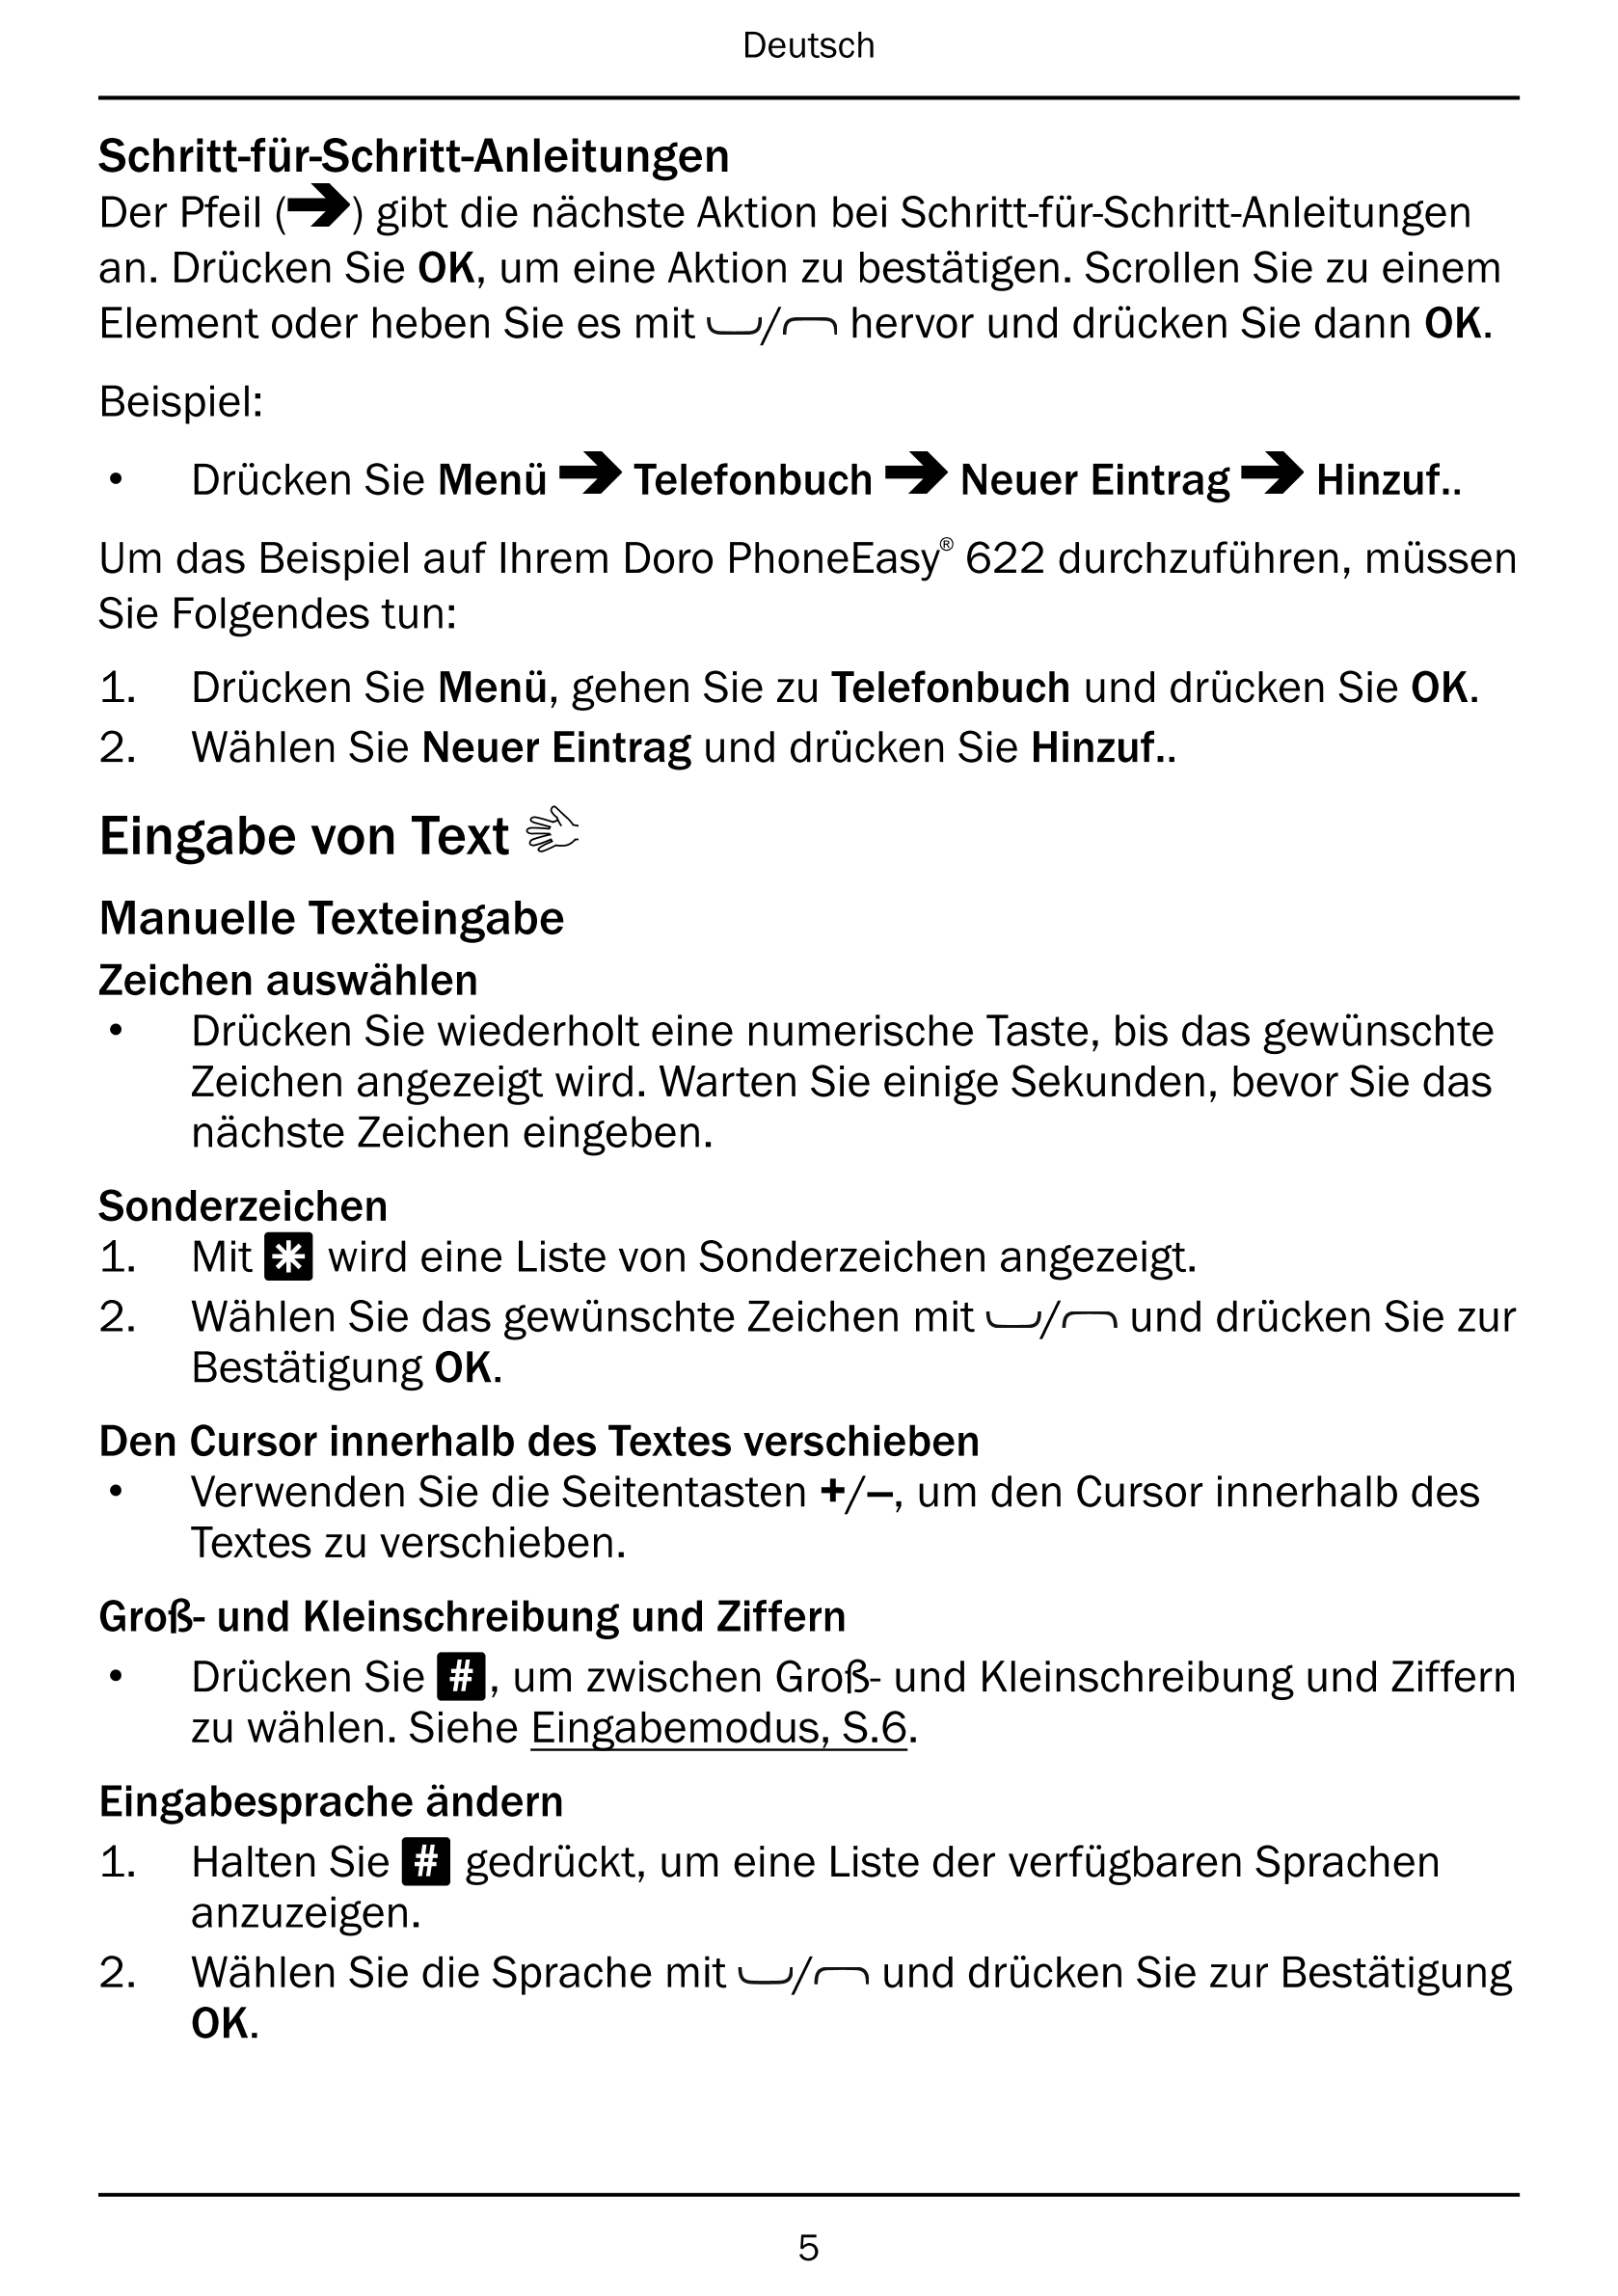 Deutsch
Schritt-für-Schritt-Anleitungen
Der Pfeil ( ) gibt die nächste Aktion bei Schritt-für-Schritt-Anleitungen
an. Drücken Si